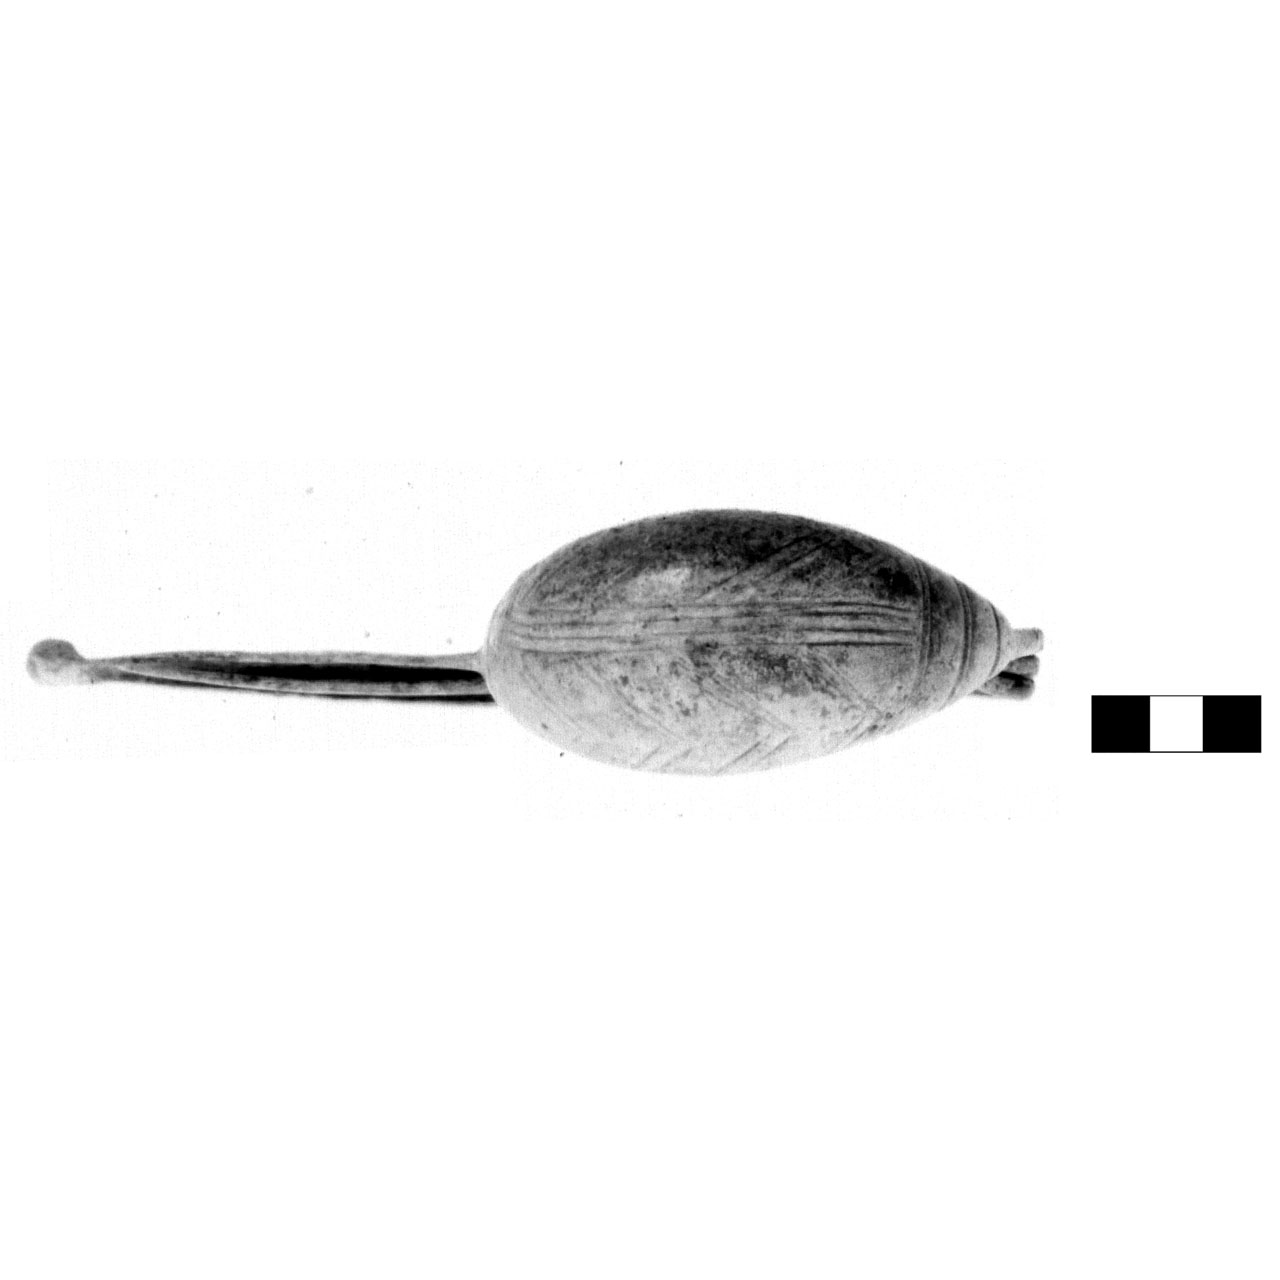 fibula a navicella - fase Piceno IV A (sec. VI a.C)